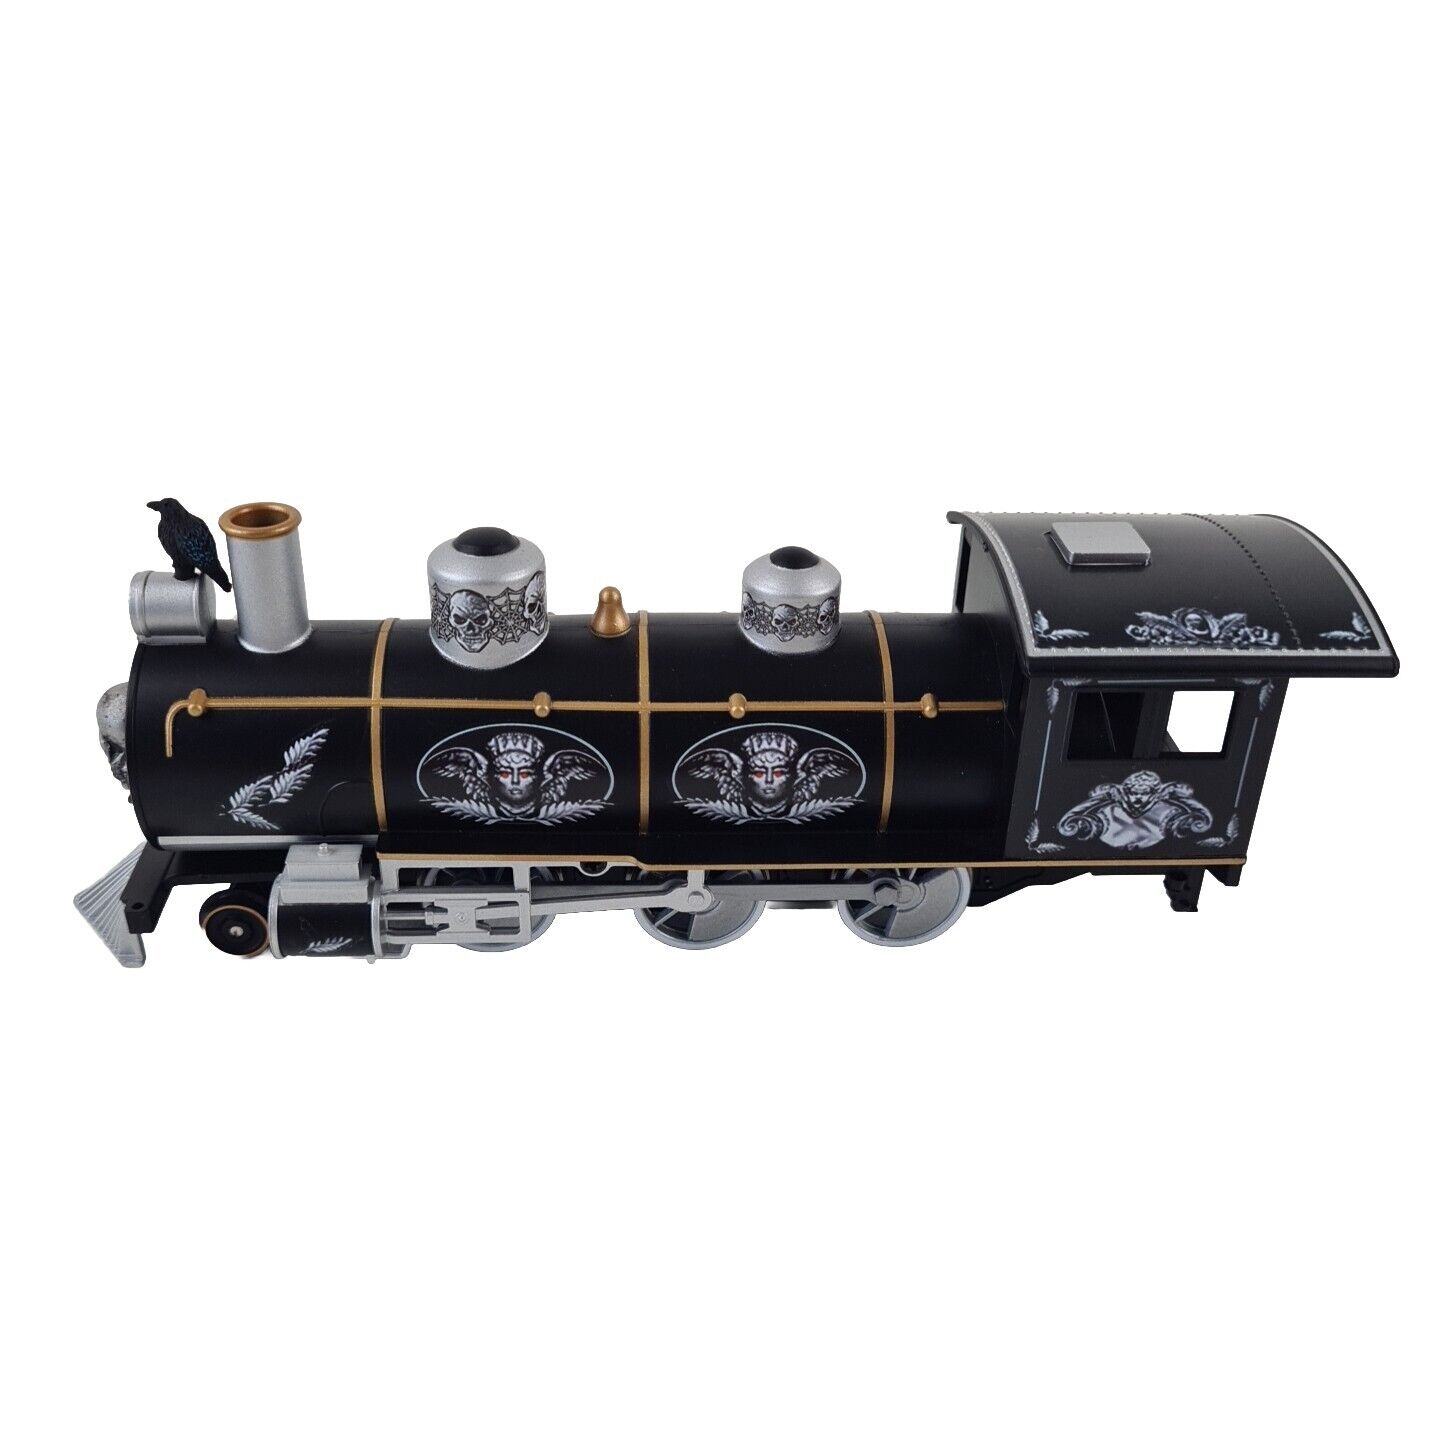 🚨 Hawthorne The Raven Steam Locomotive Village Halloween Train Engine 01688-001